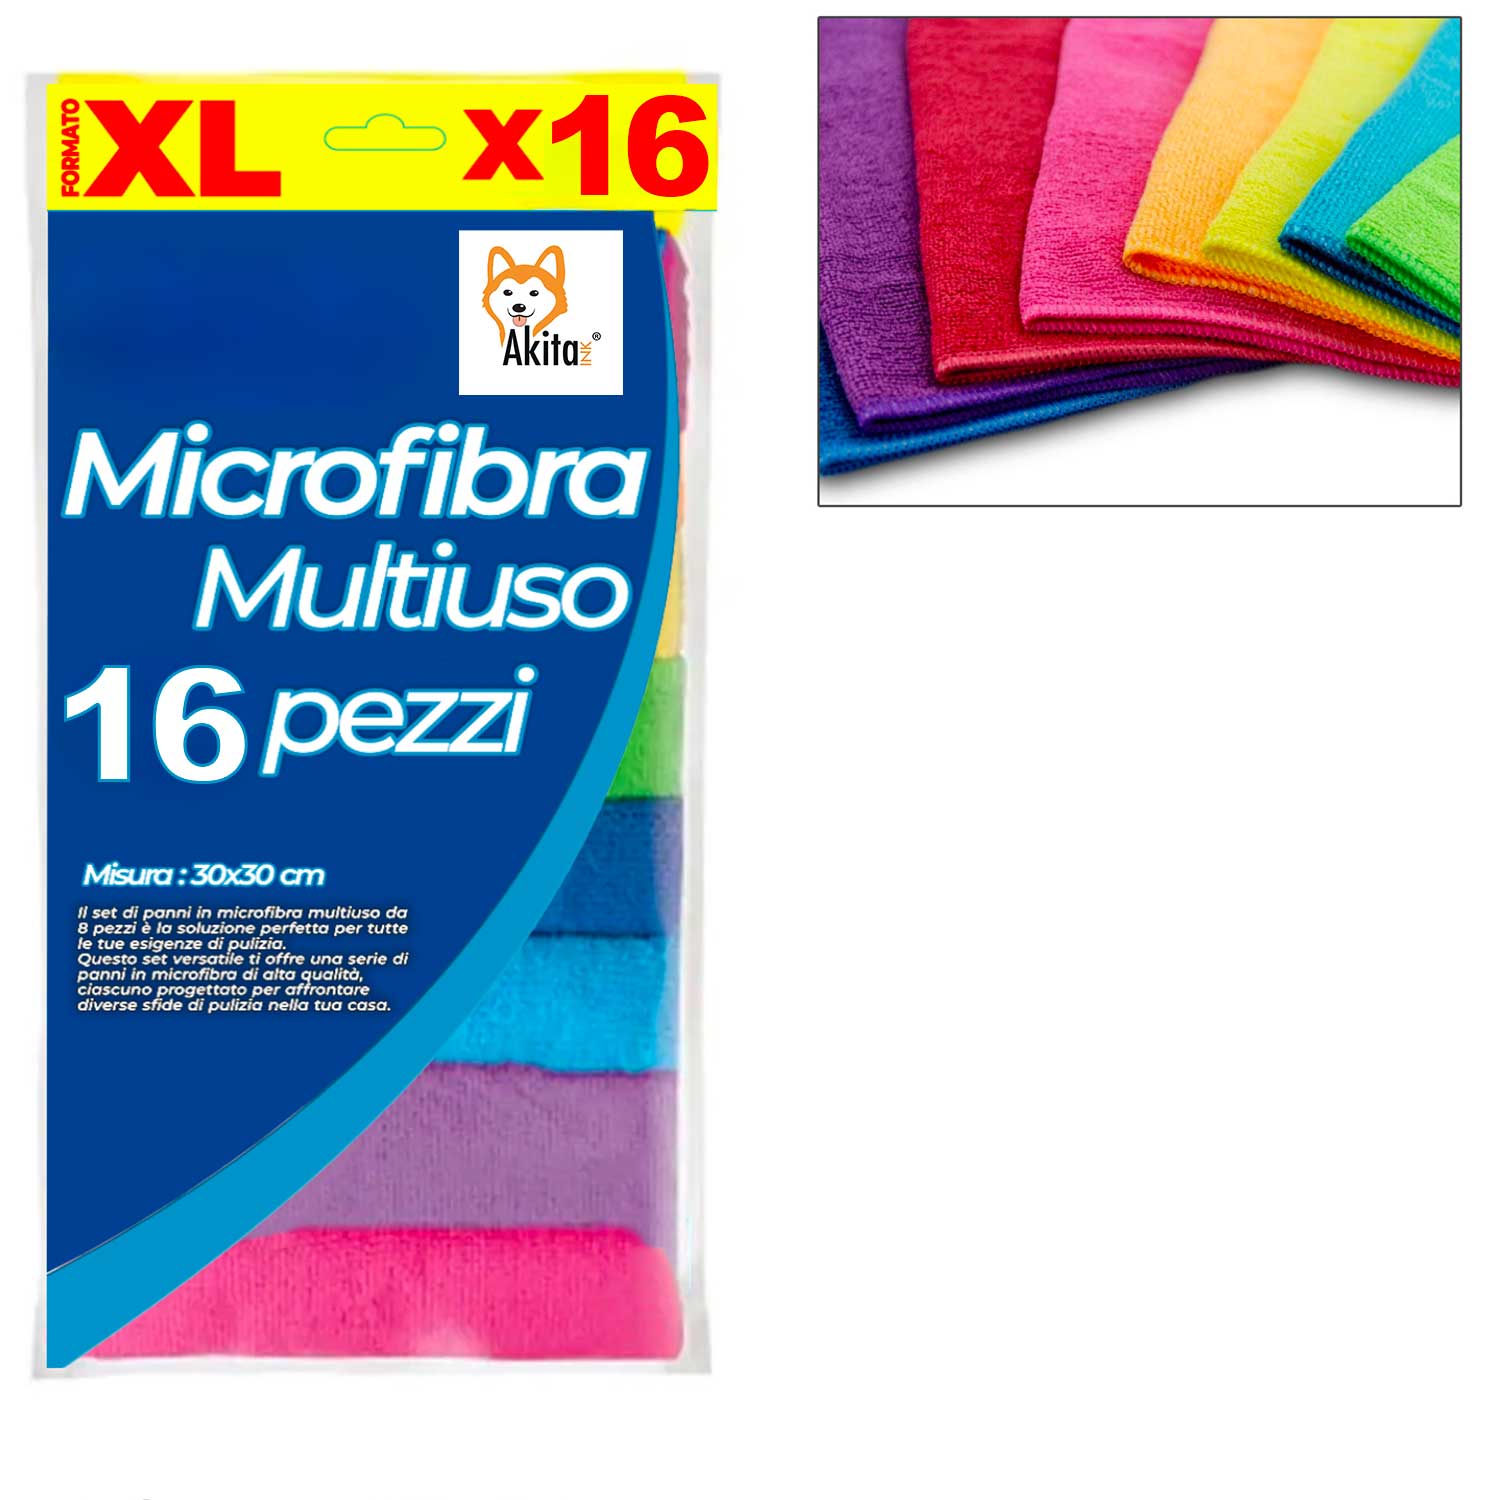 Panni in microfibra akitai 16 pz colorati, lavabili in lavatrice, riutilizzabili